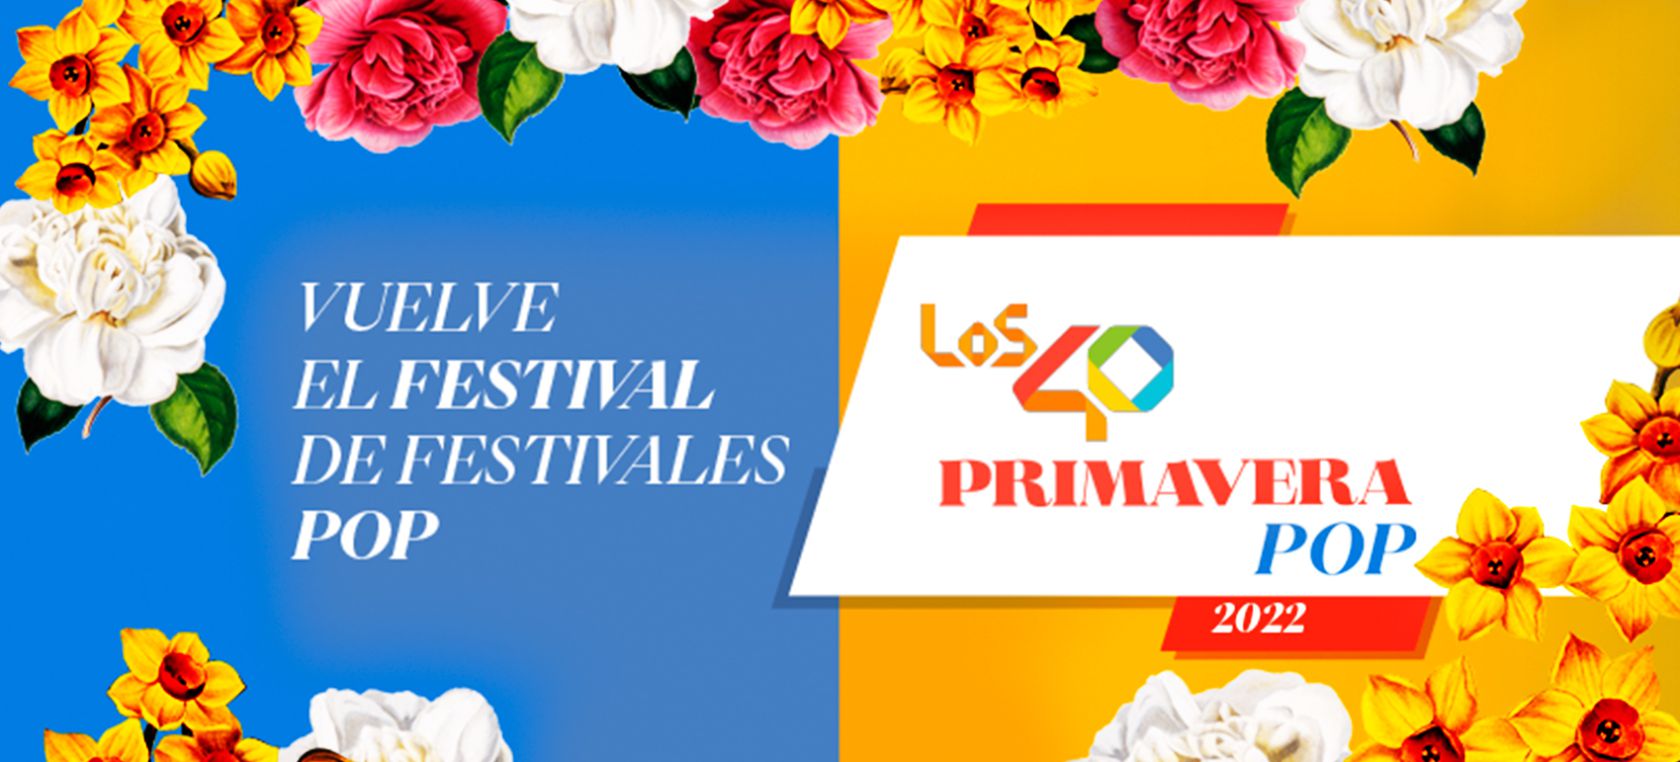 Festival LOS40 Primavera Pop Madrid y Rubí 2022: Todos los artistas confirmados del cartel